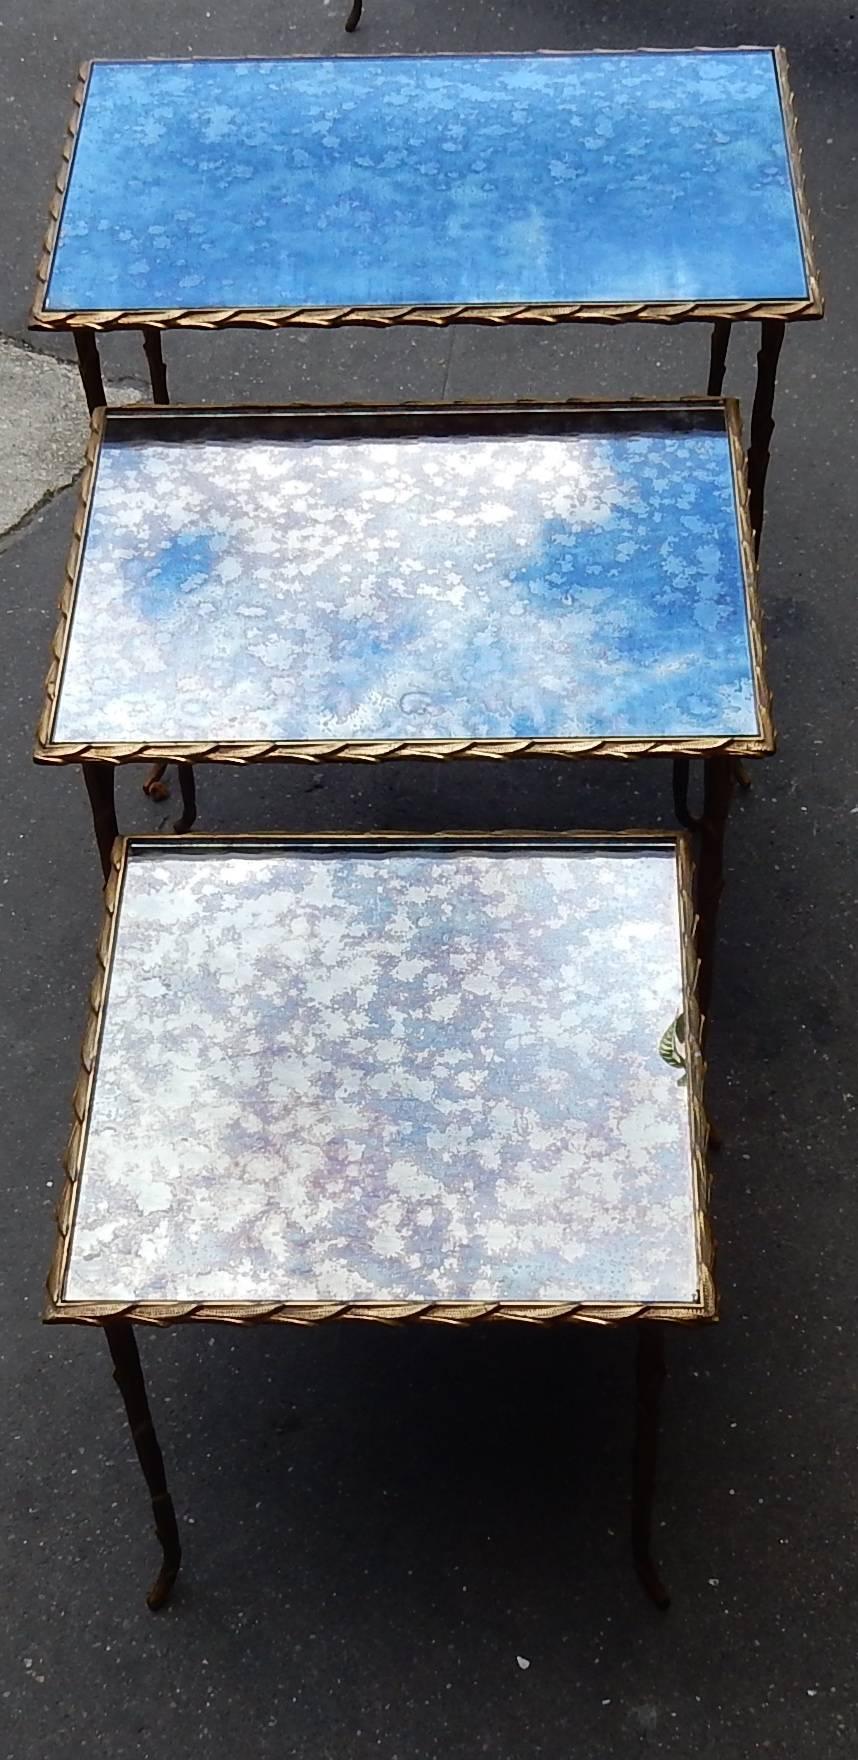 Serie von drei Bronze-Tische deco Palme, sind Tops in oxyded olded Spiegel,
Größen: 47 x 37 x H 44 cm,
37 x 37 x H 38 cm,
ca. 1950-1970.
Guter Zustand.